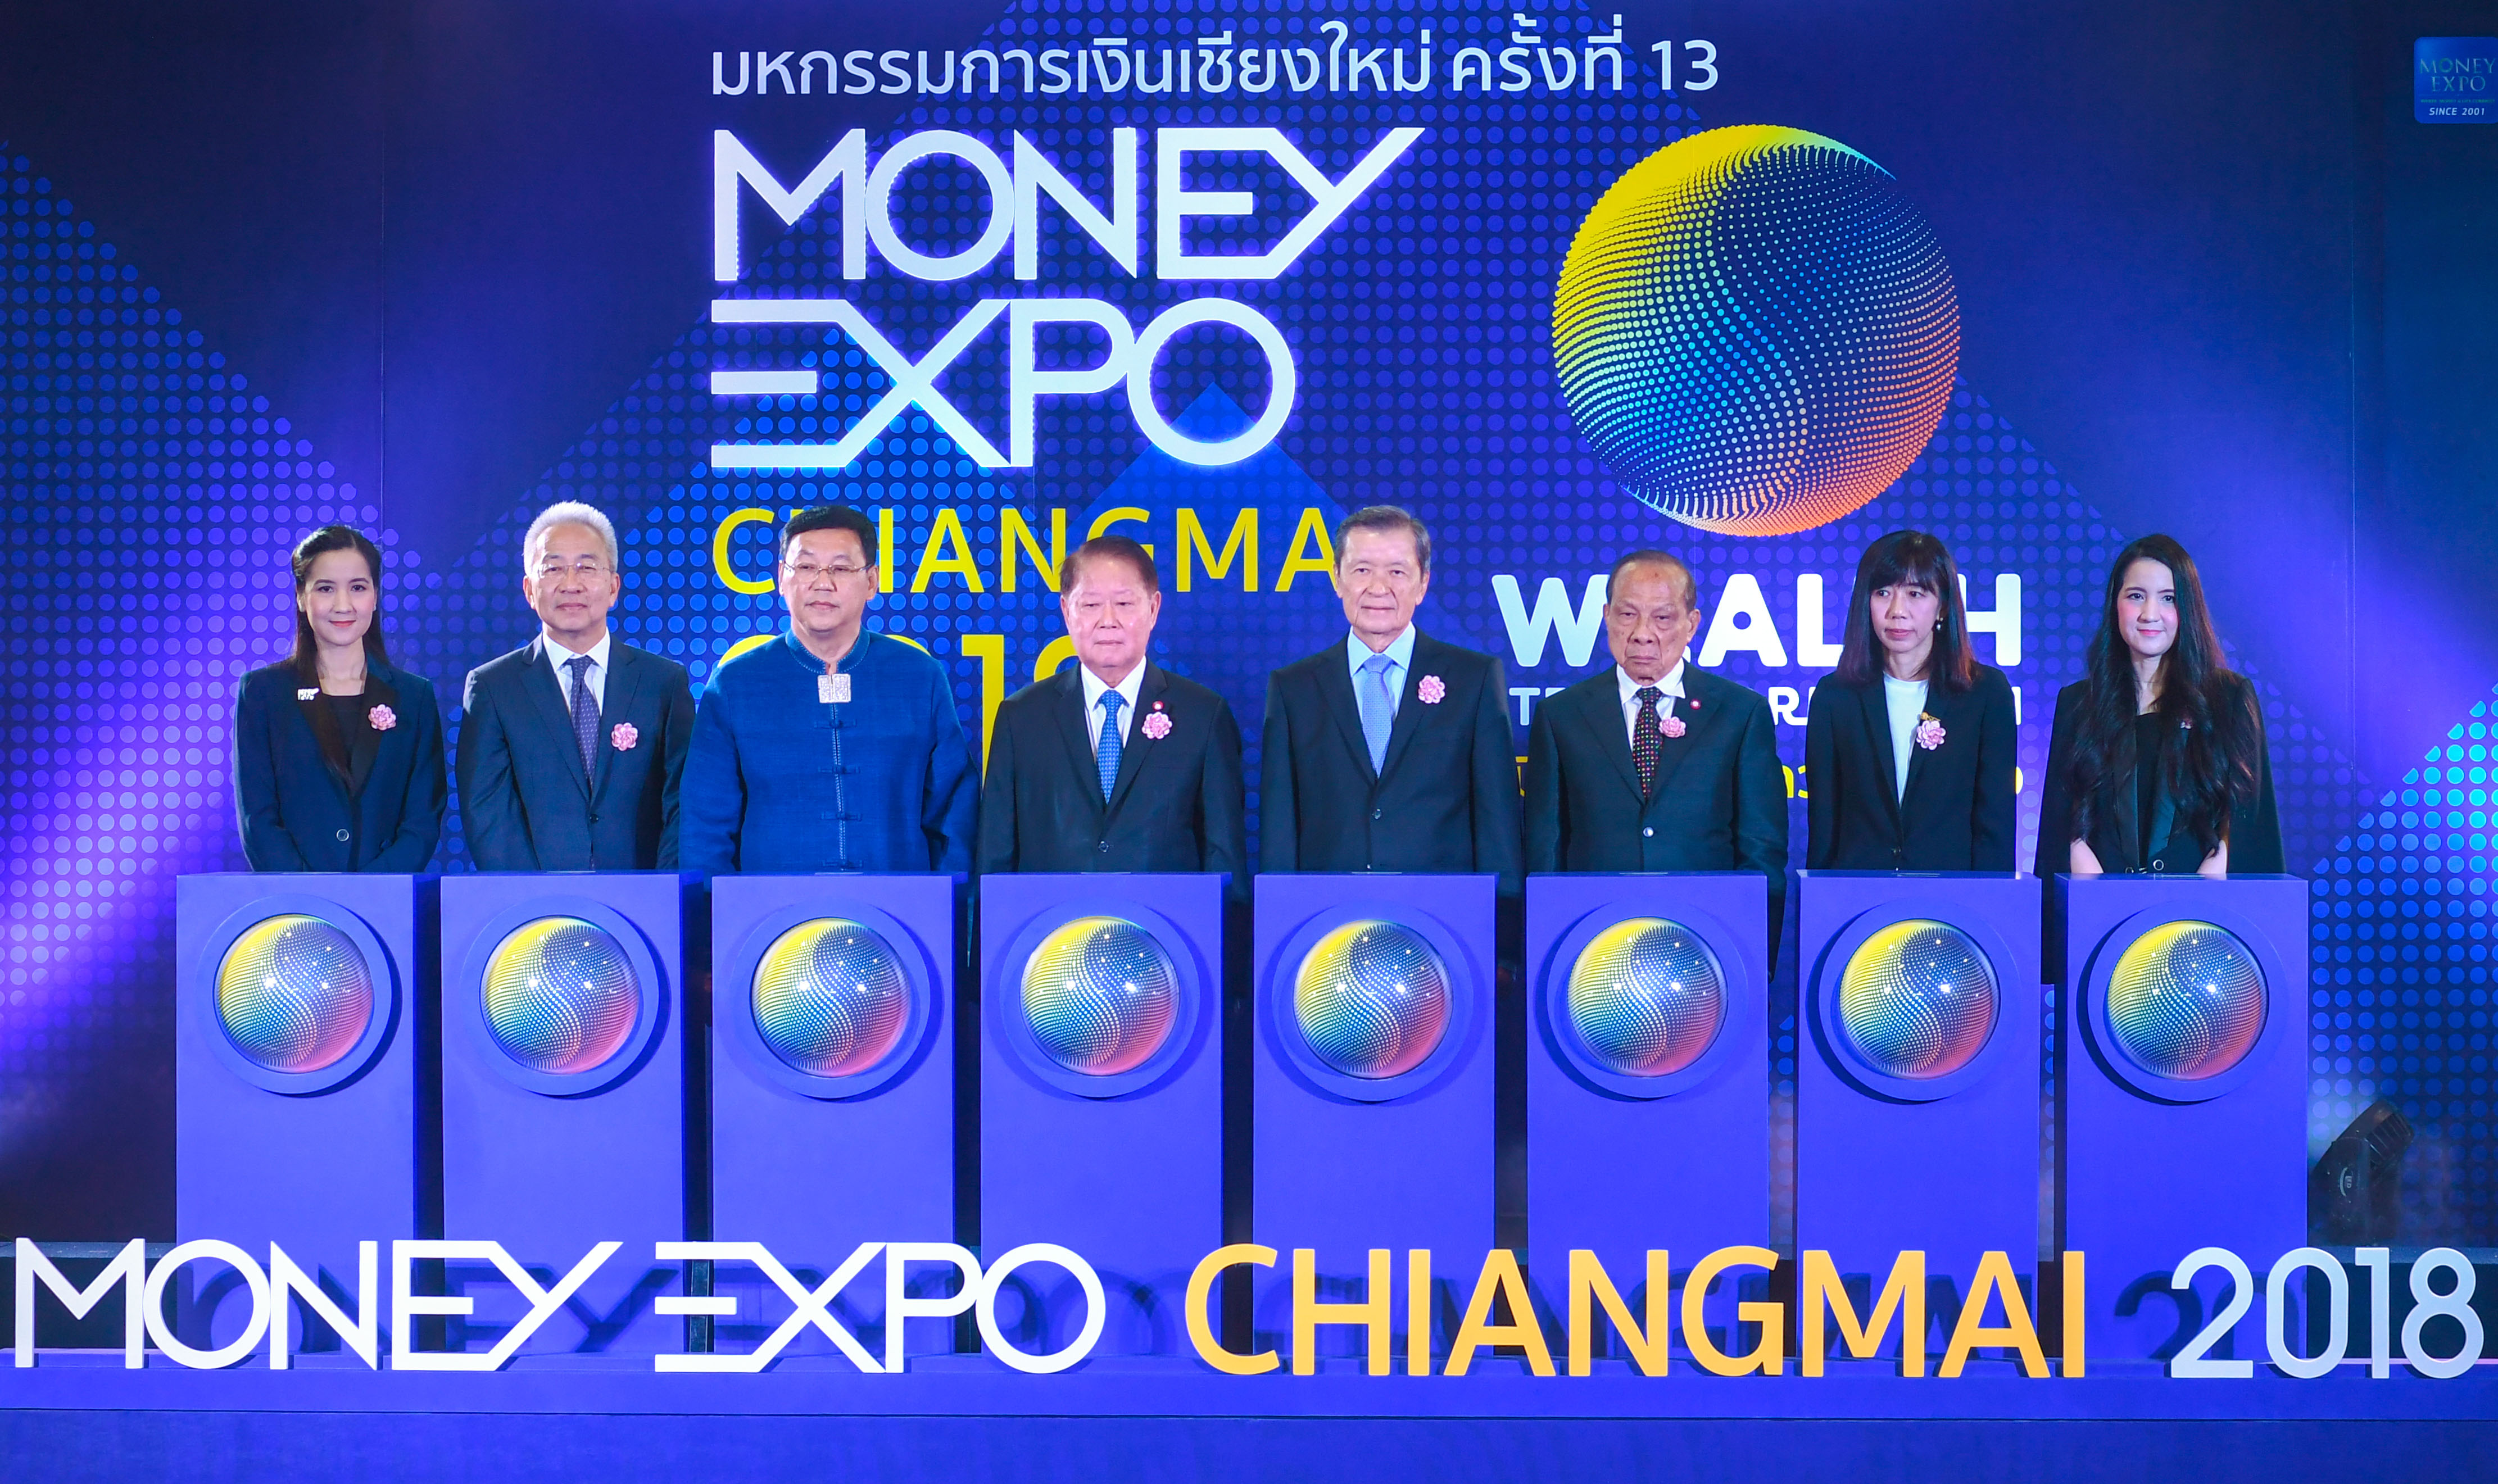 Money Expo Chiangmai 2018 เปิดงานยิ่งใหญ่ส่งท้ายปีทุ่มโปรโมชั่นดอกเบี้ยเงินกู้ 0% ชวนออมหุ้น-กองทุนสร้างเงินล้าน